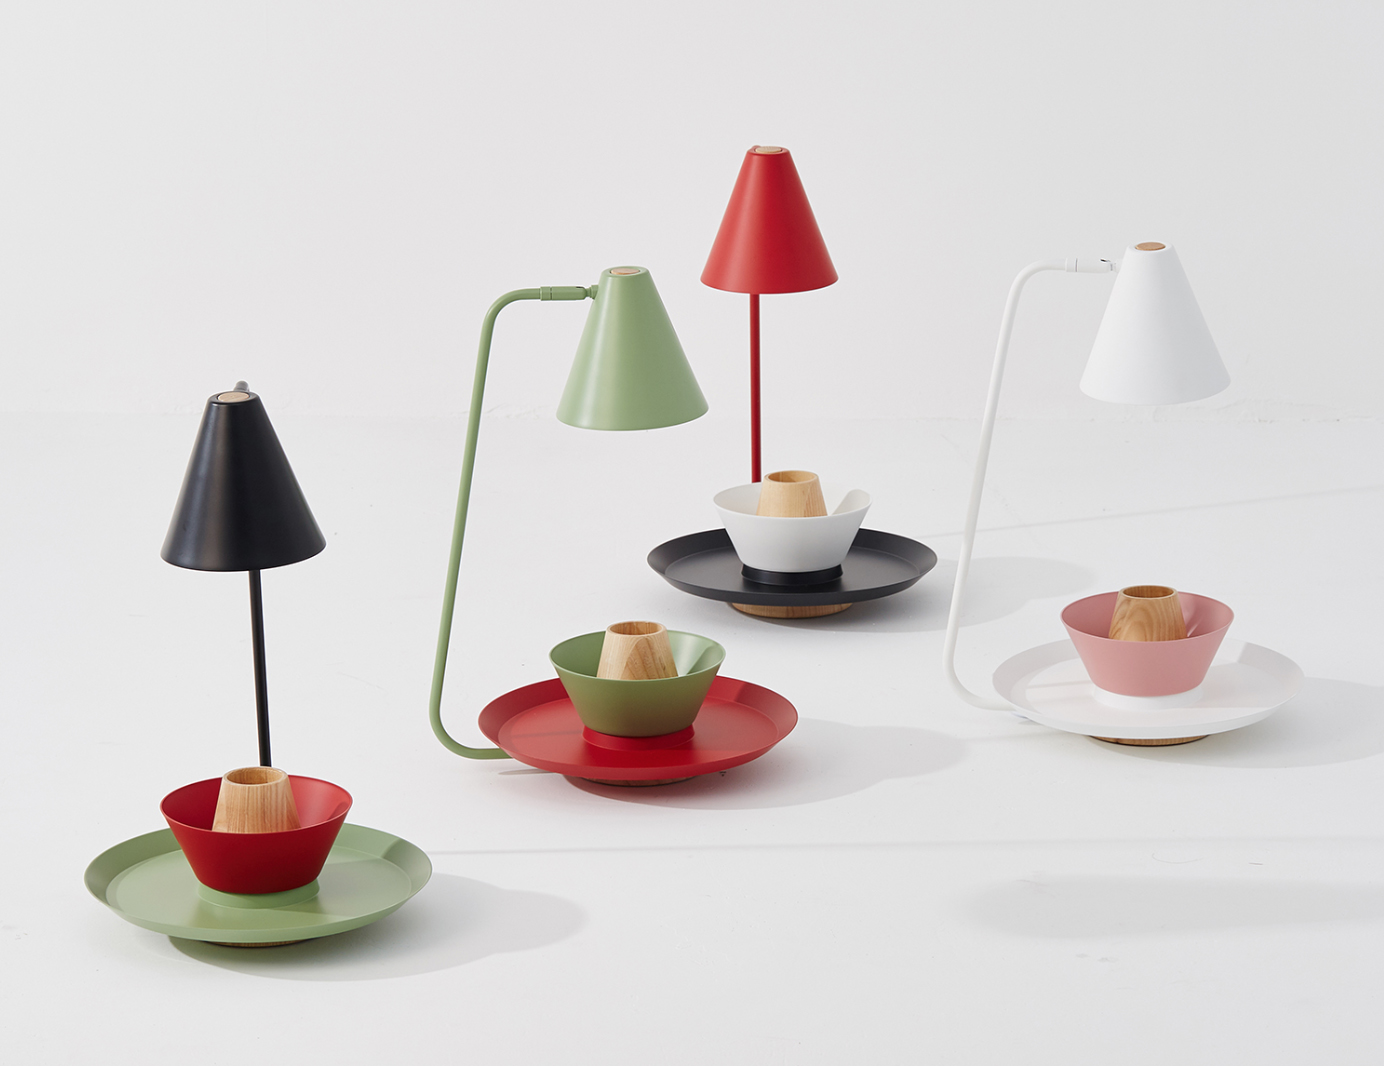 Lámpara de mesa Conik. Diseño escandinavo minimalista hecho lúdico a través de la modularidad y el color